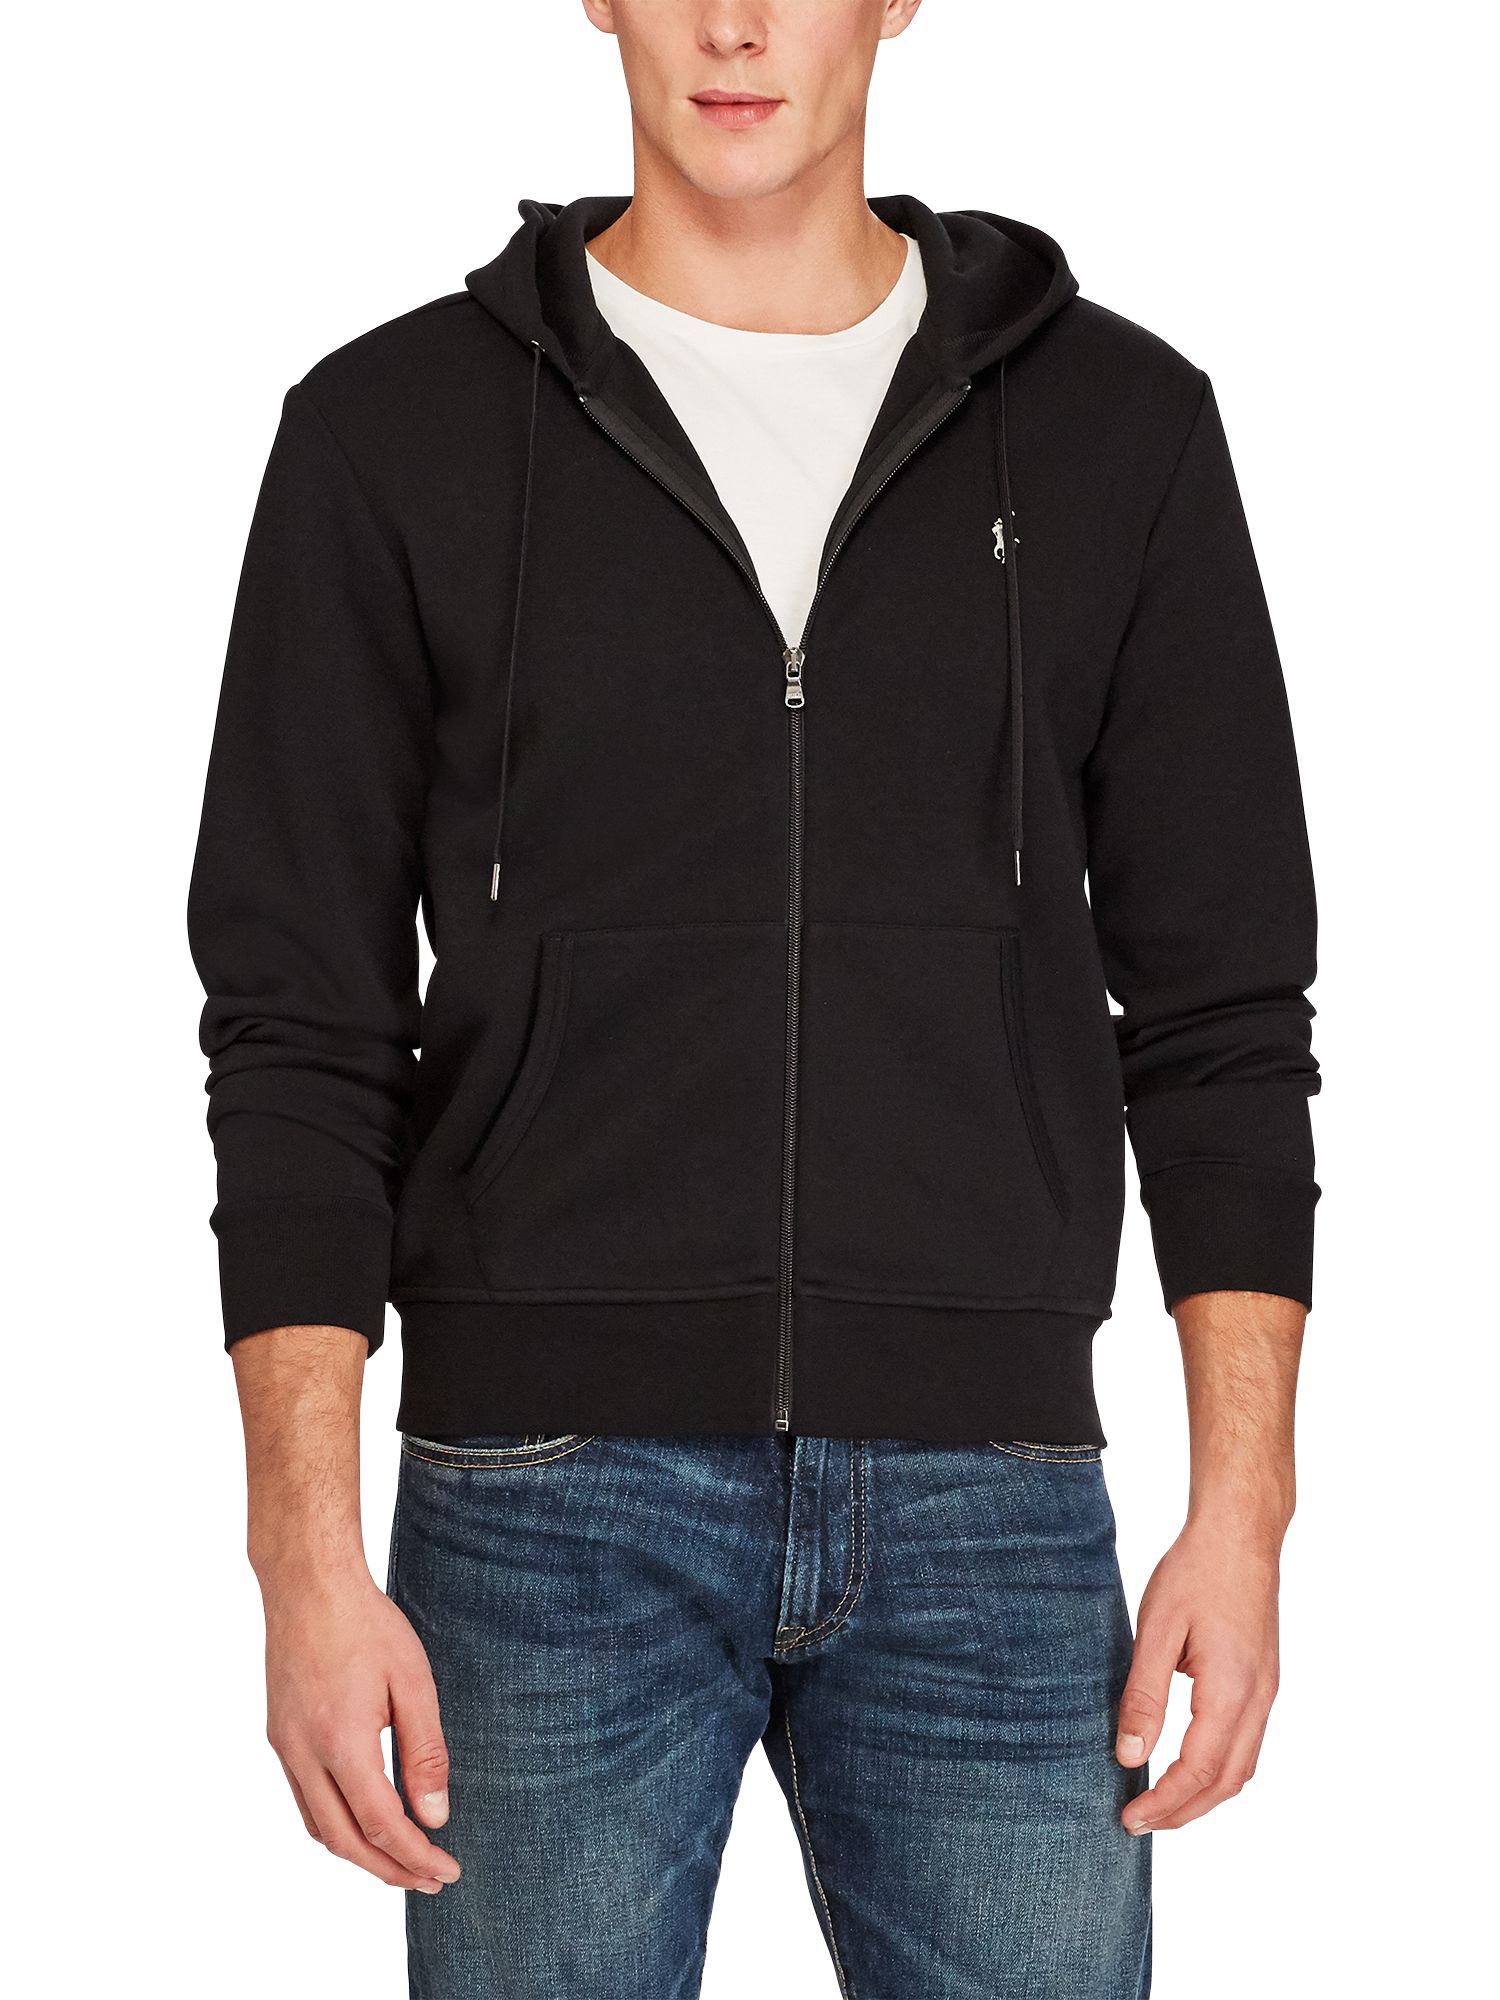 polo black zip up hoodie